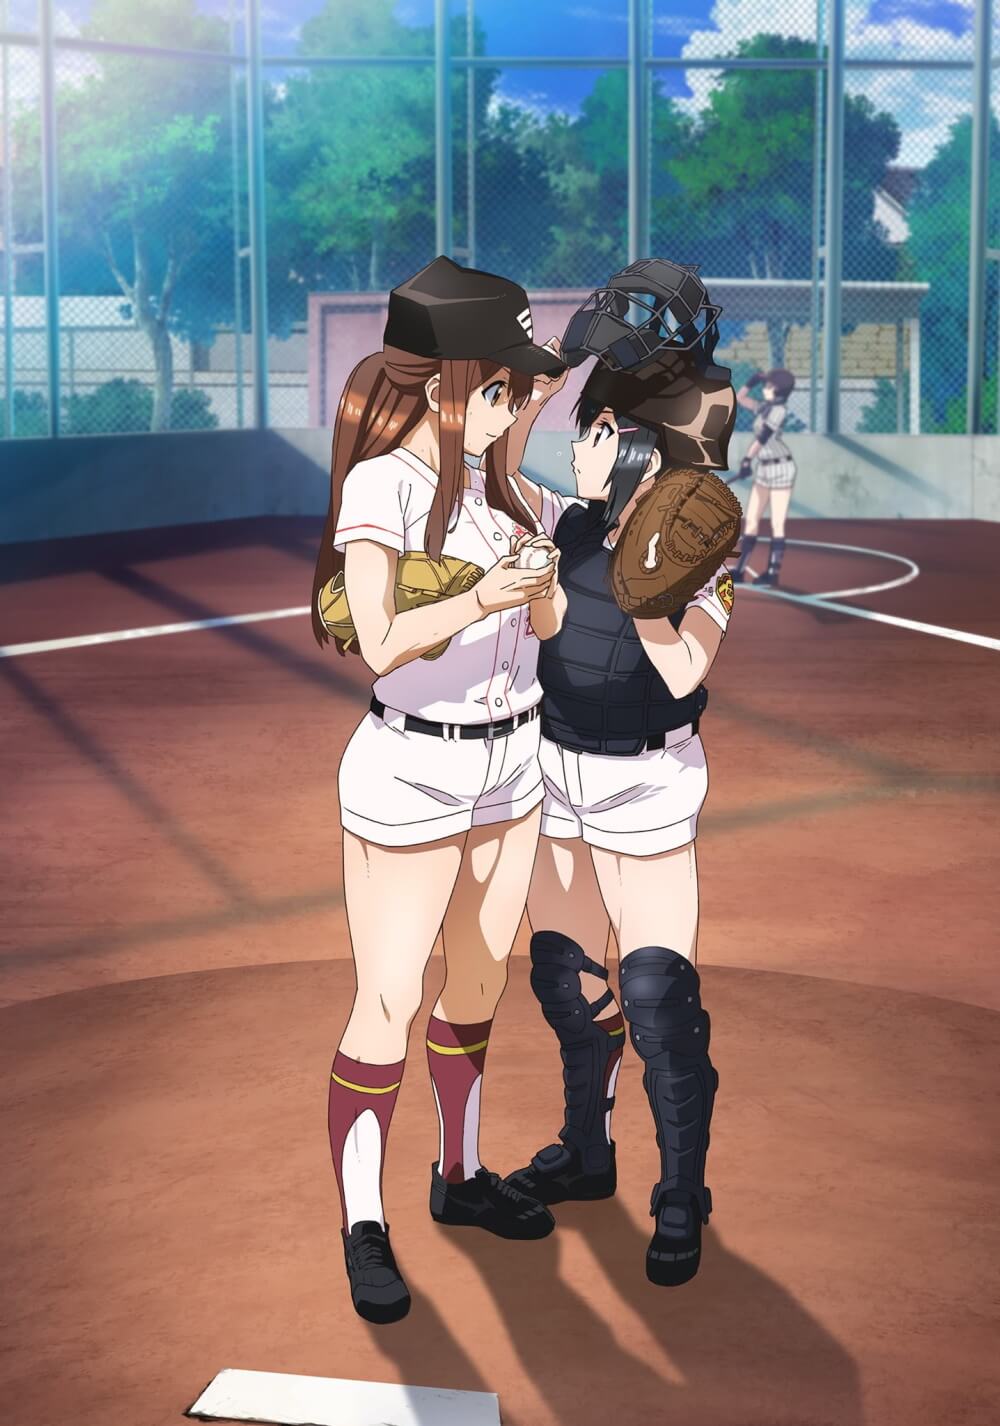 تامایومی: دختران بیسبال (Tamayomi: The Baseball Girls)